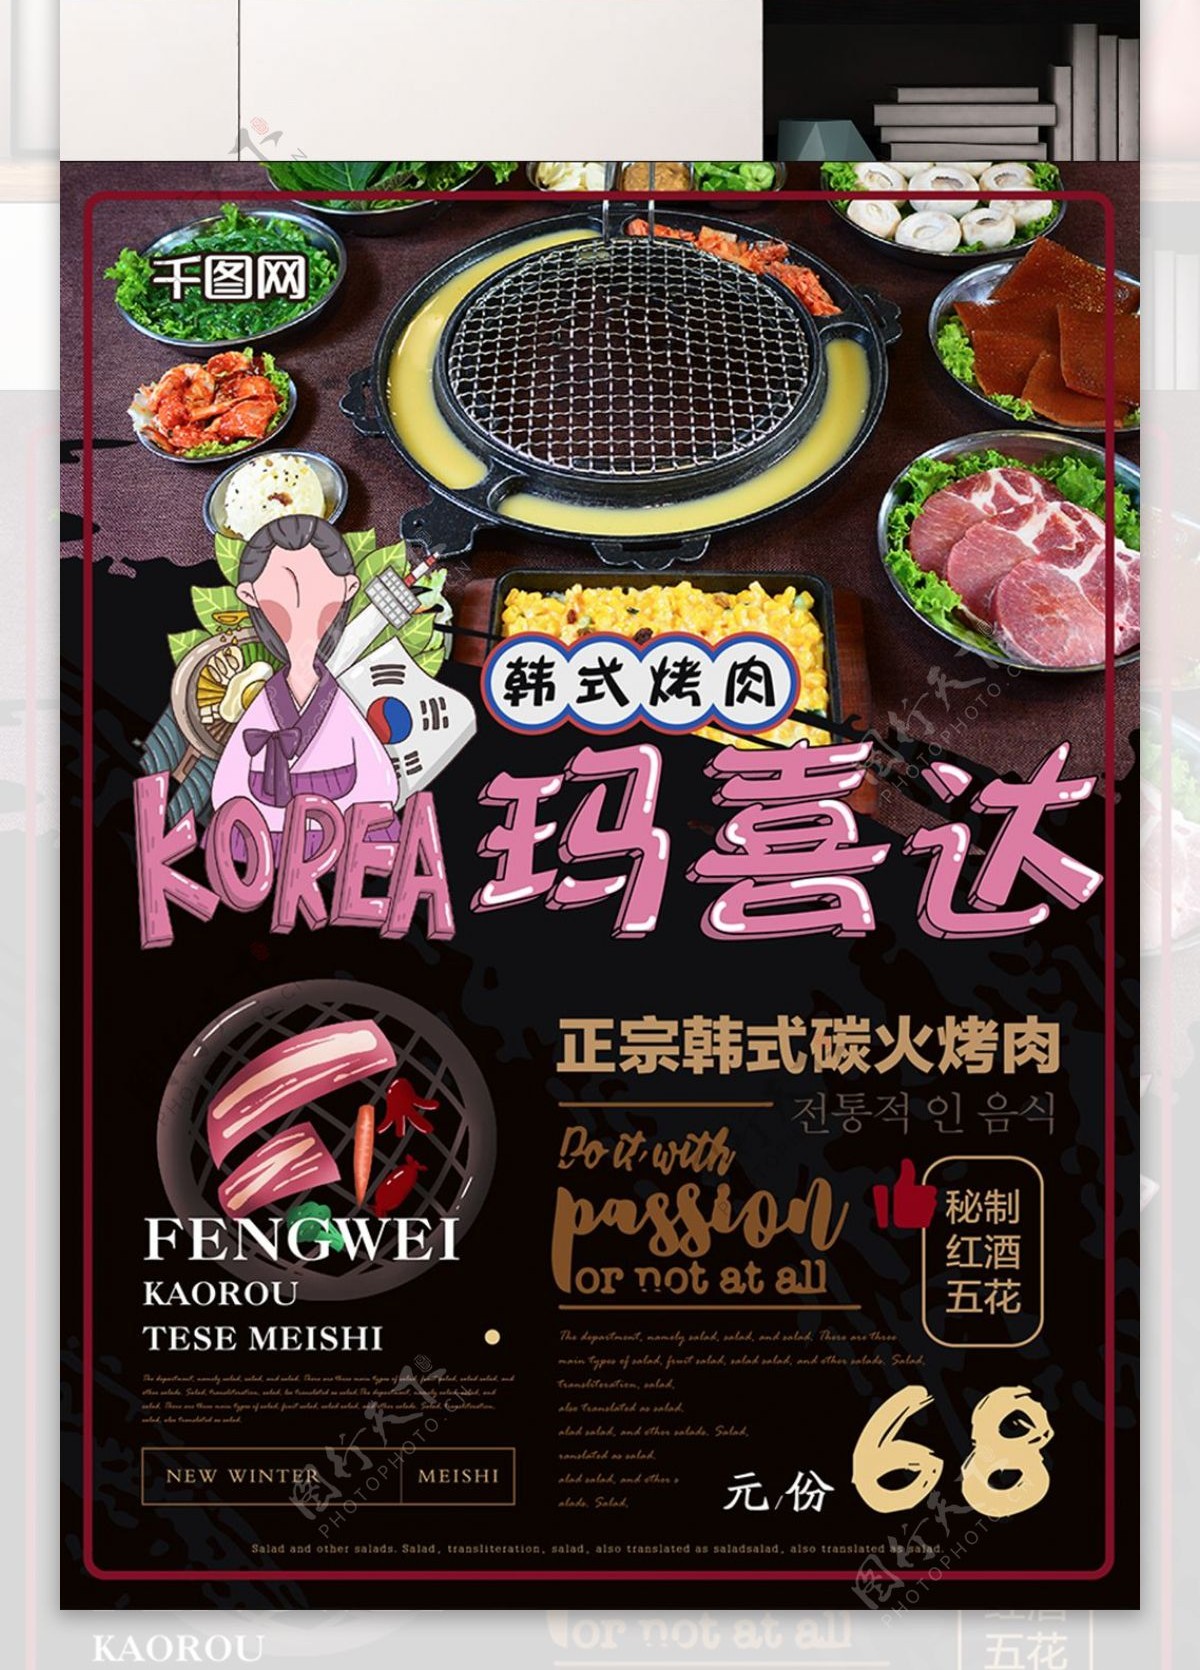 简约创意插画韩式烤肉美食海报